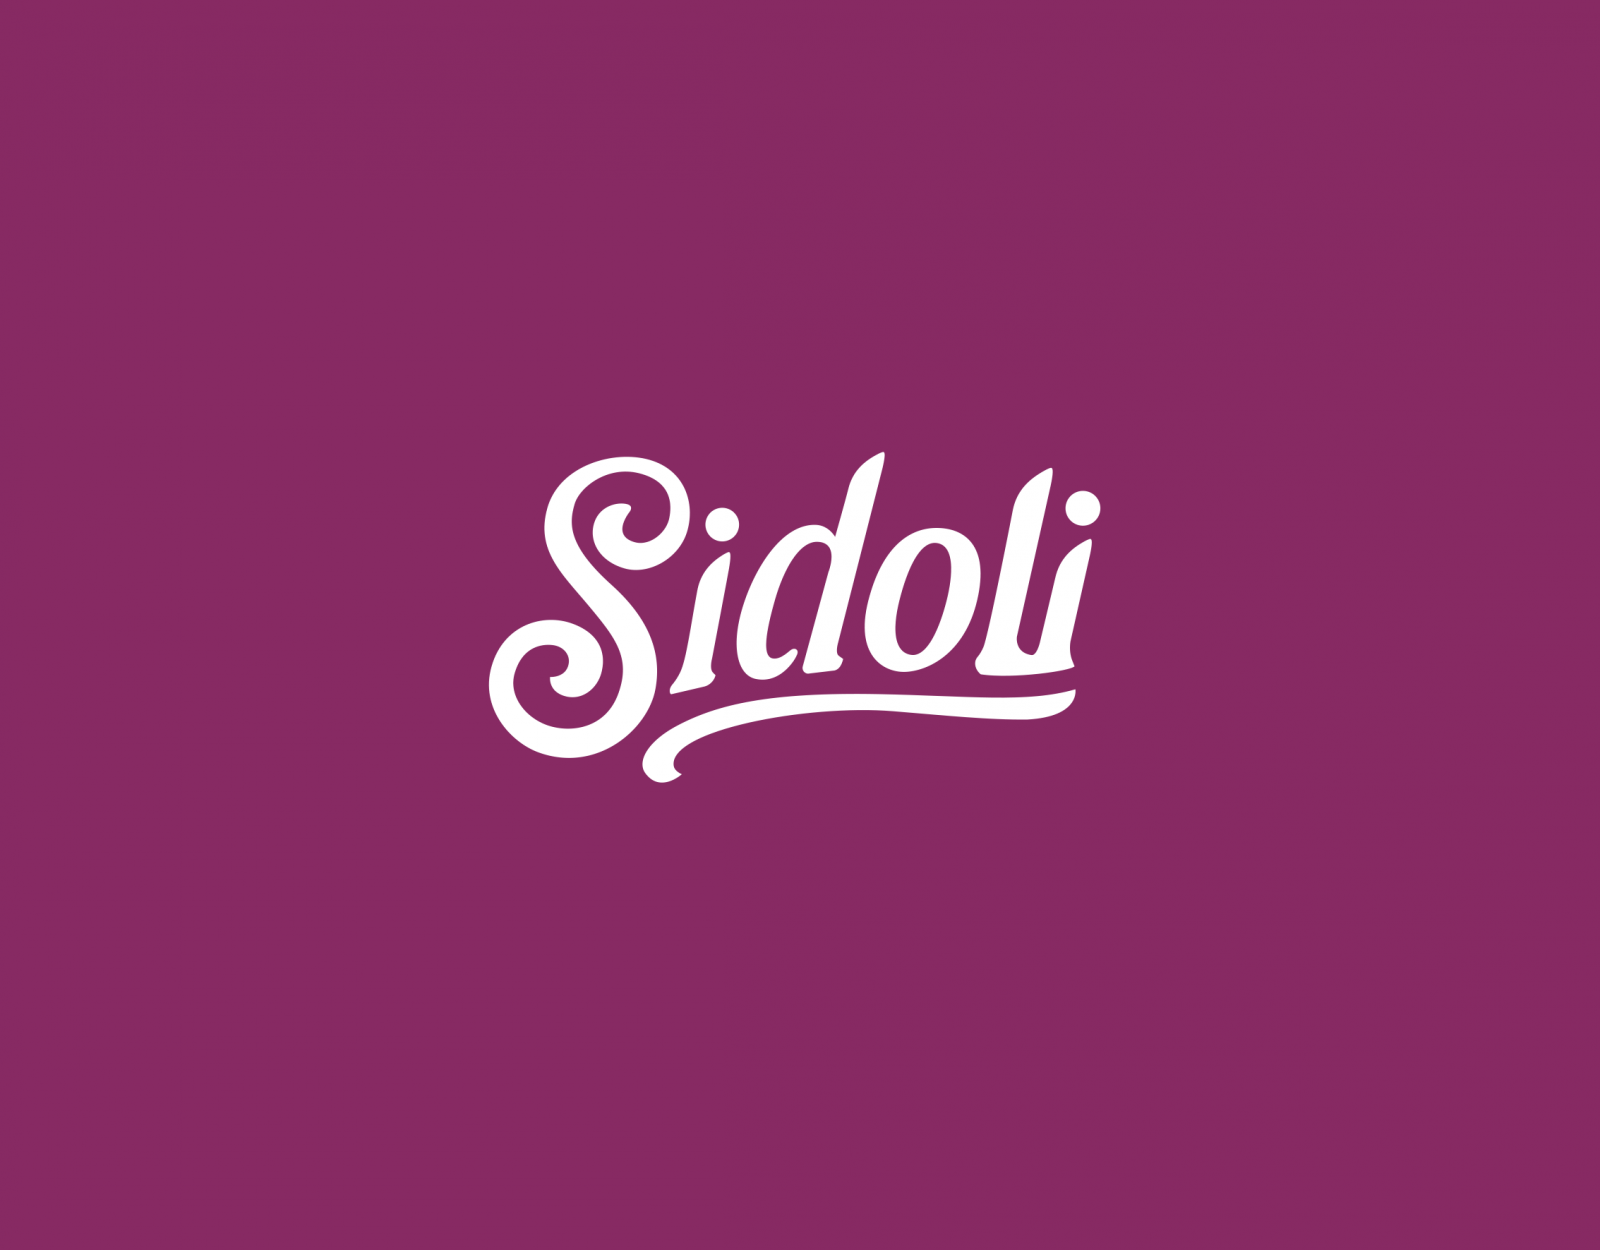 Sidoli logo